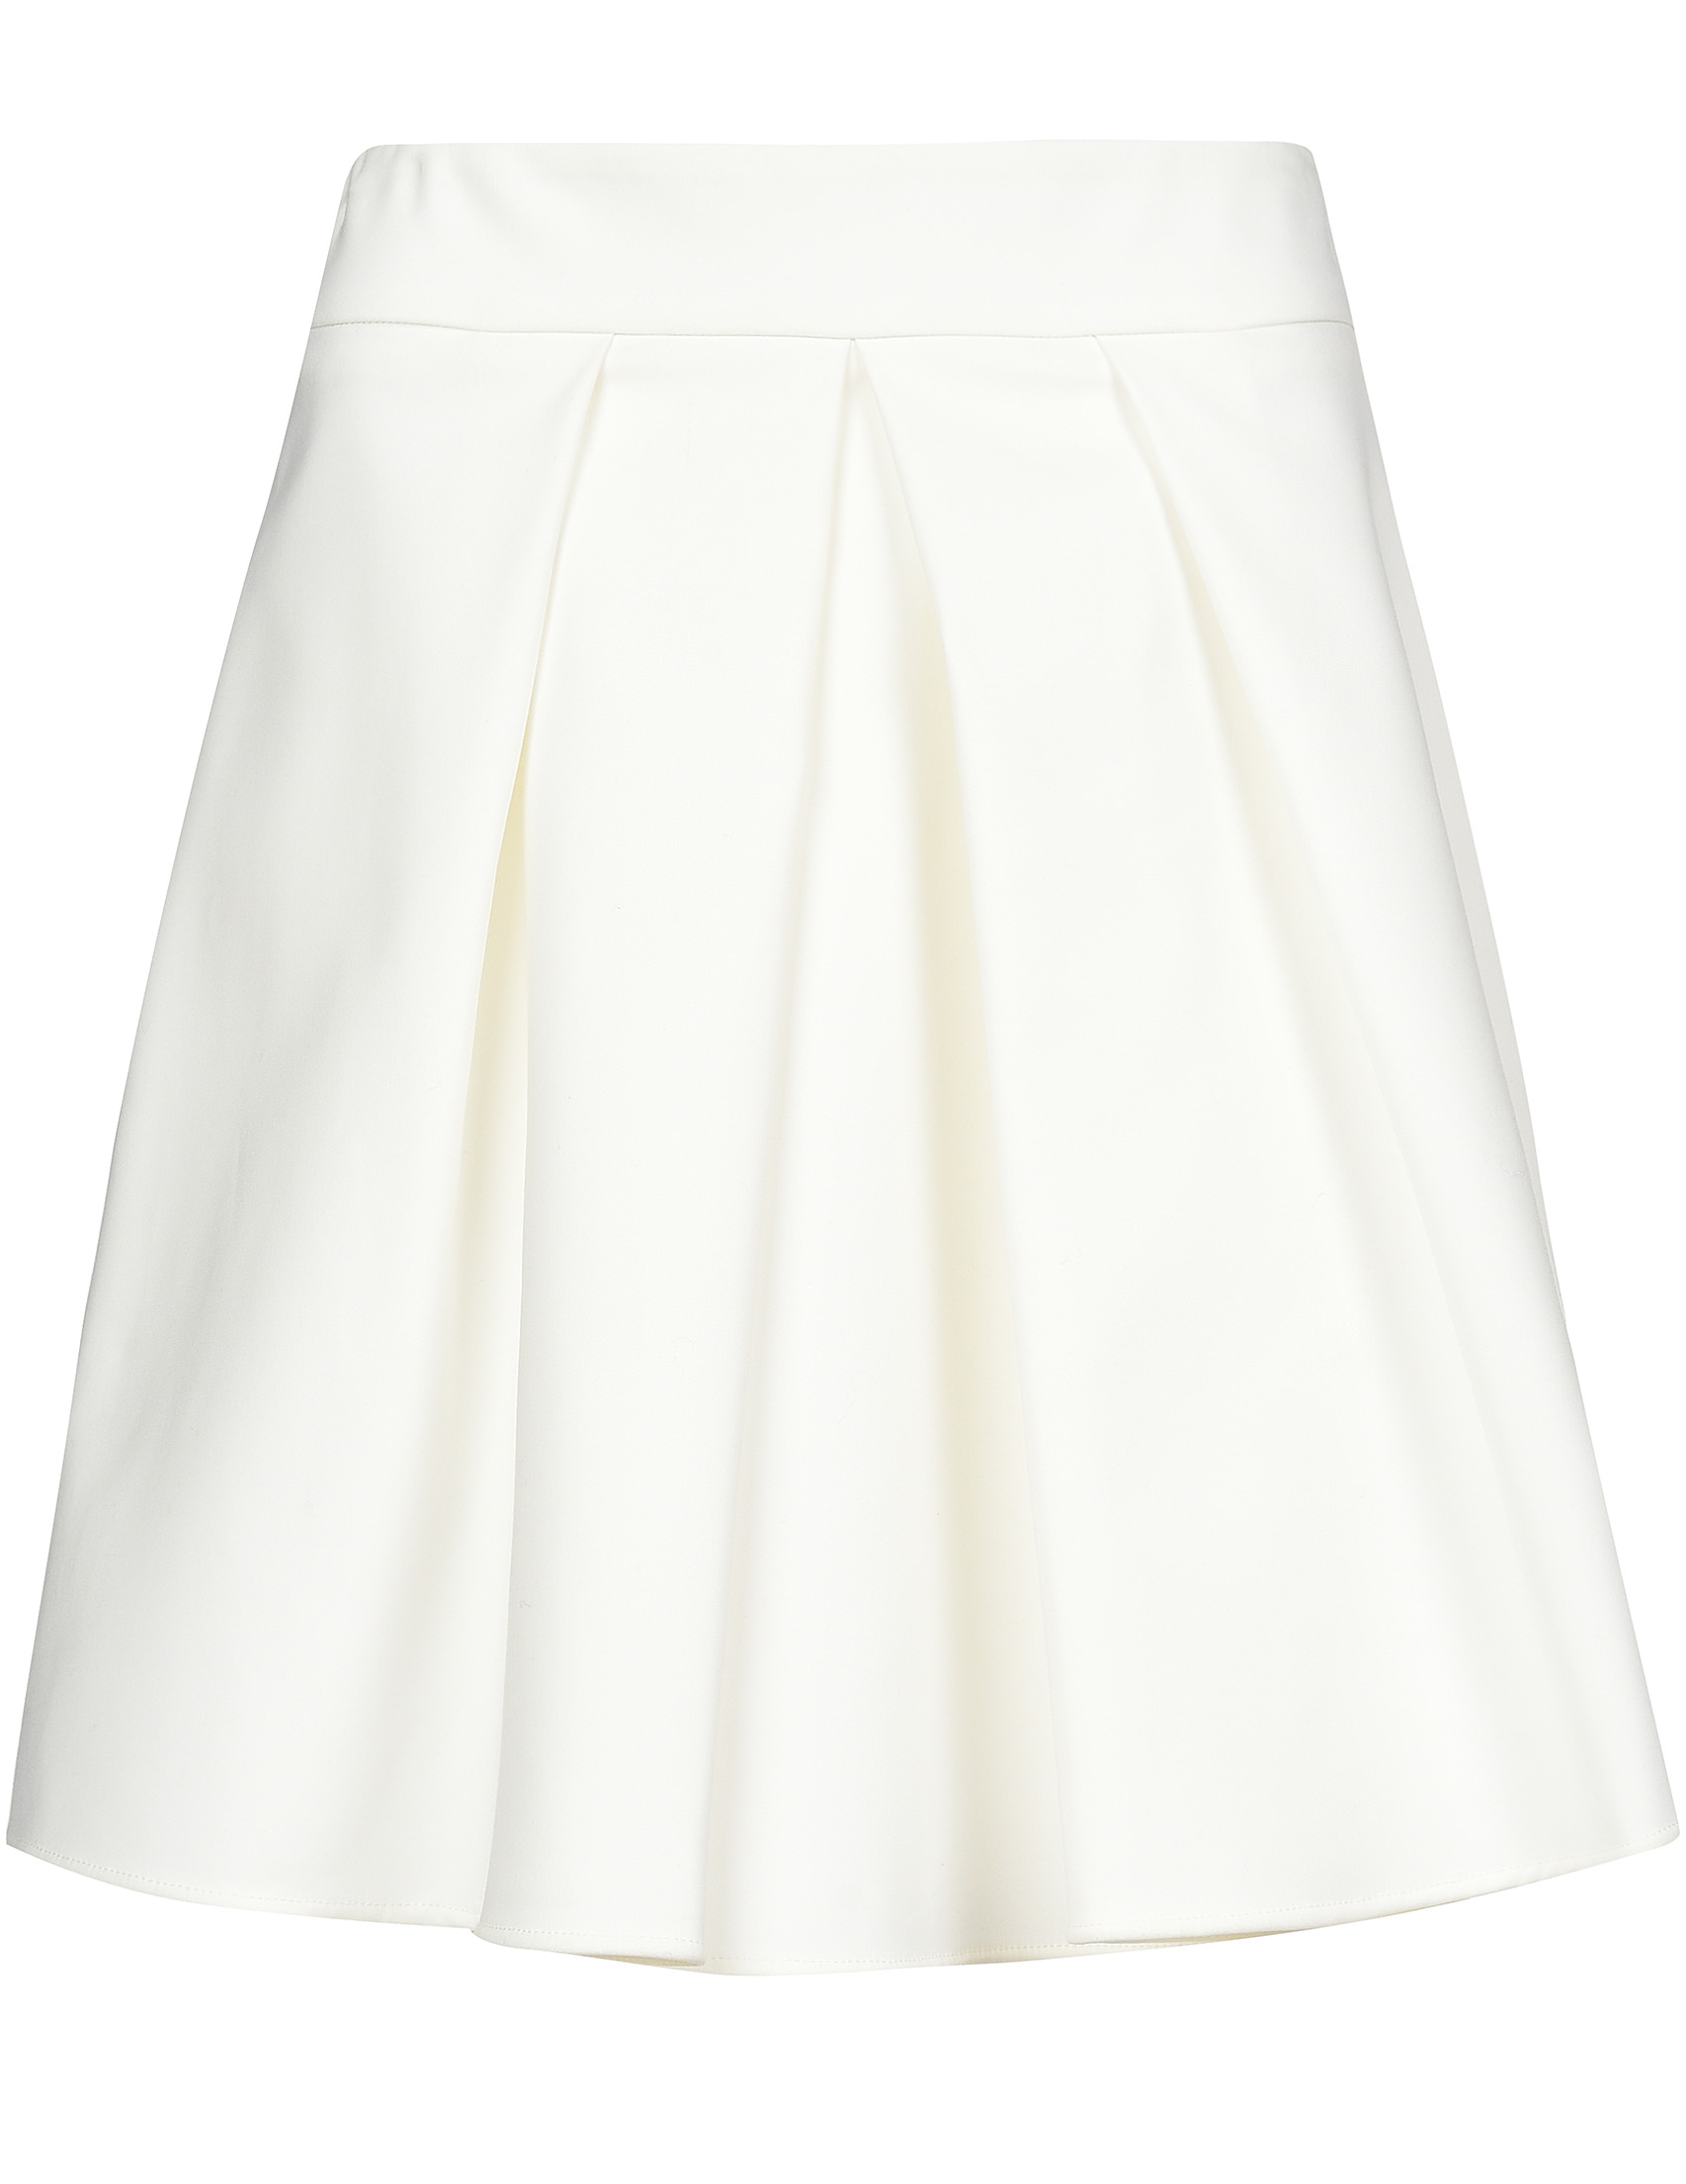 Женская юбка PATRIZIA PEPE DG005L-A43-W146_white